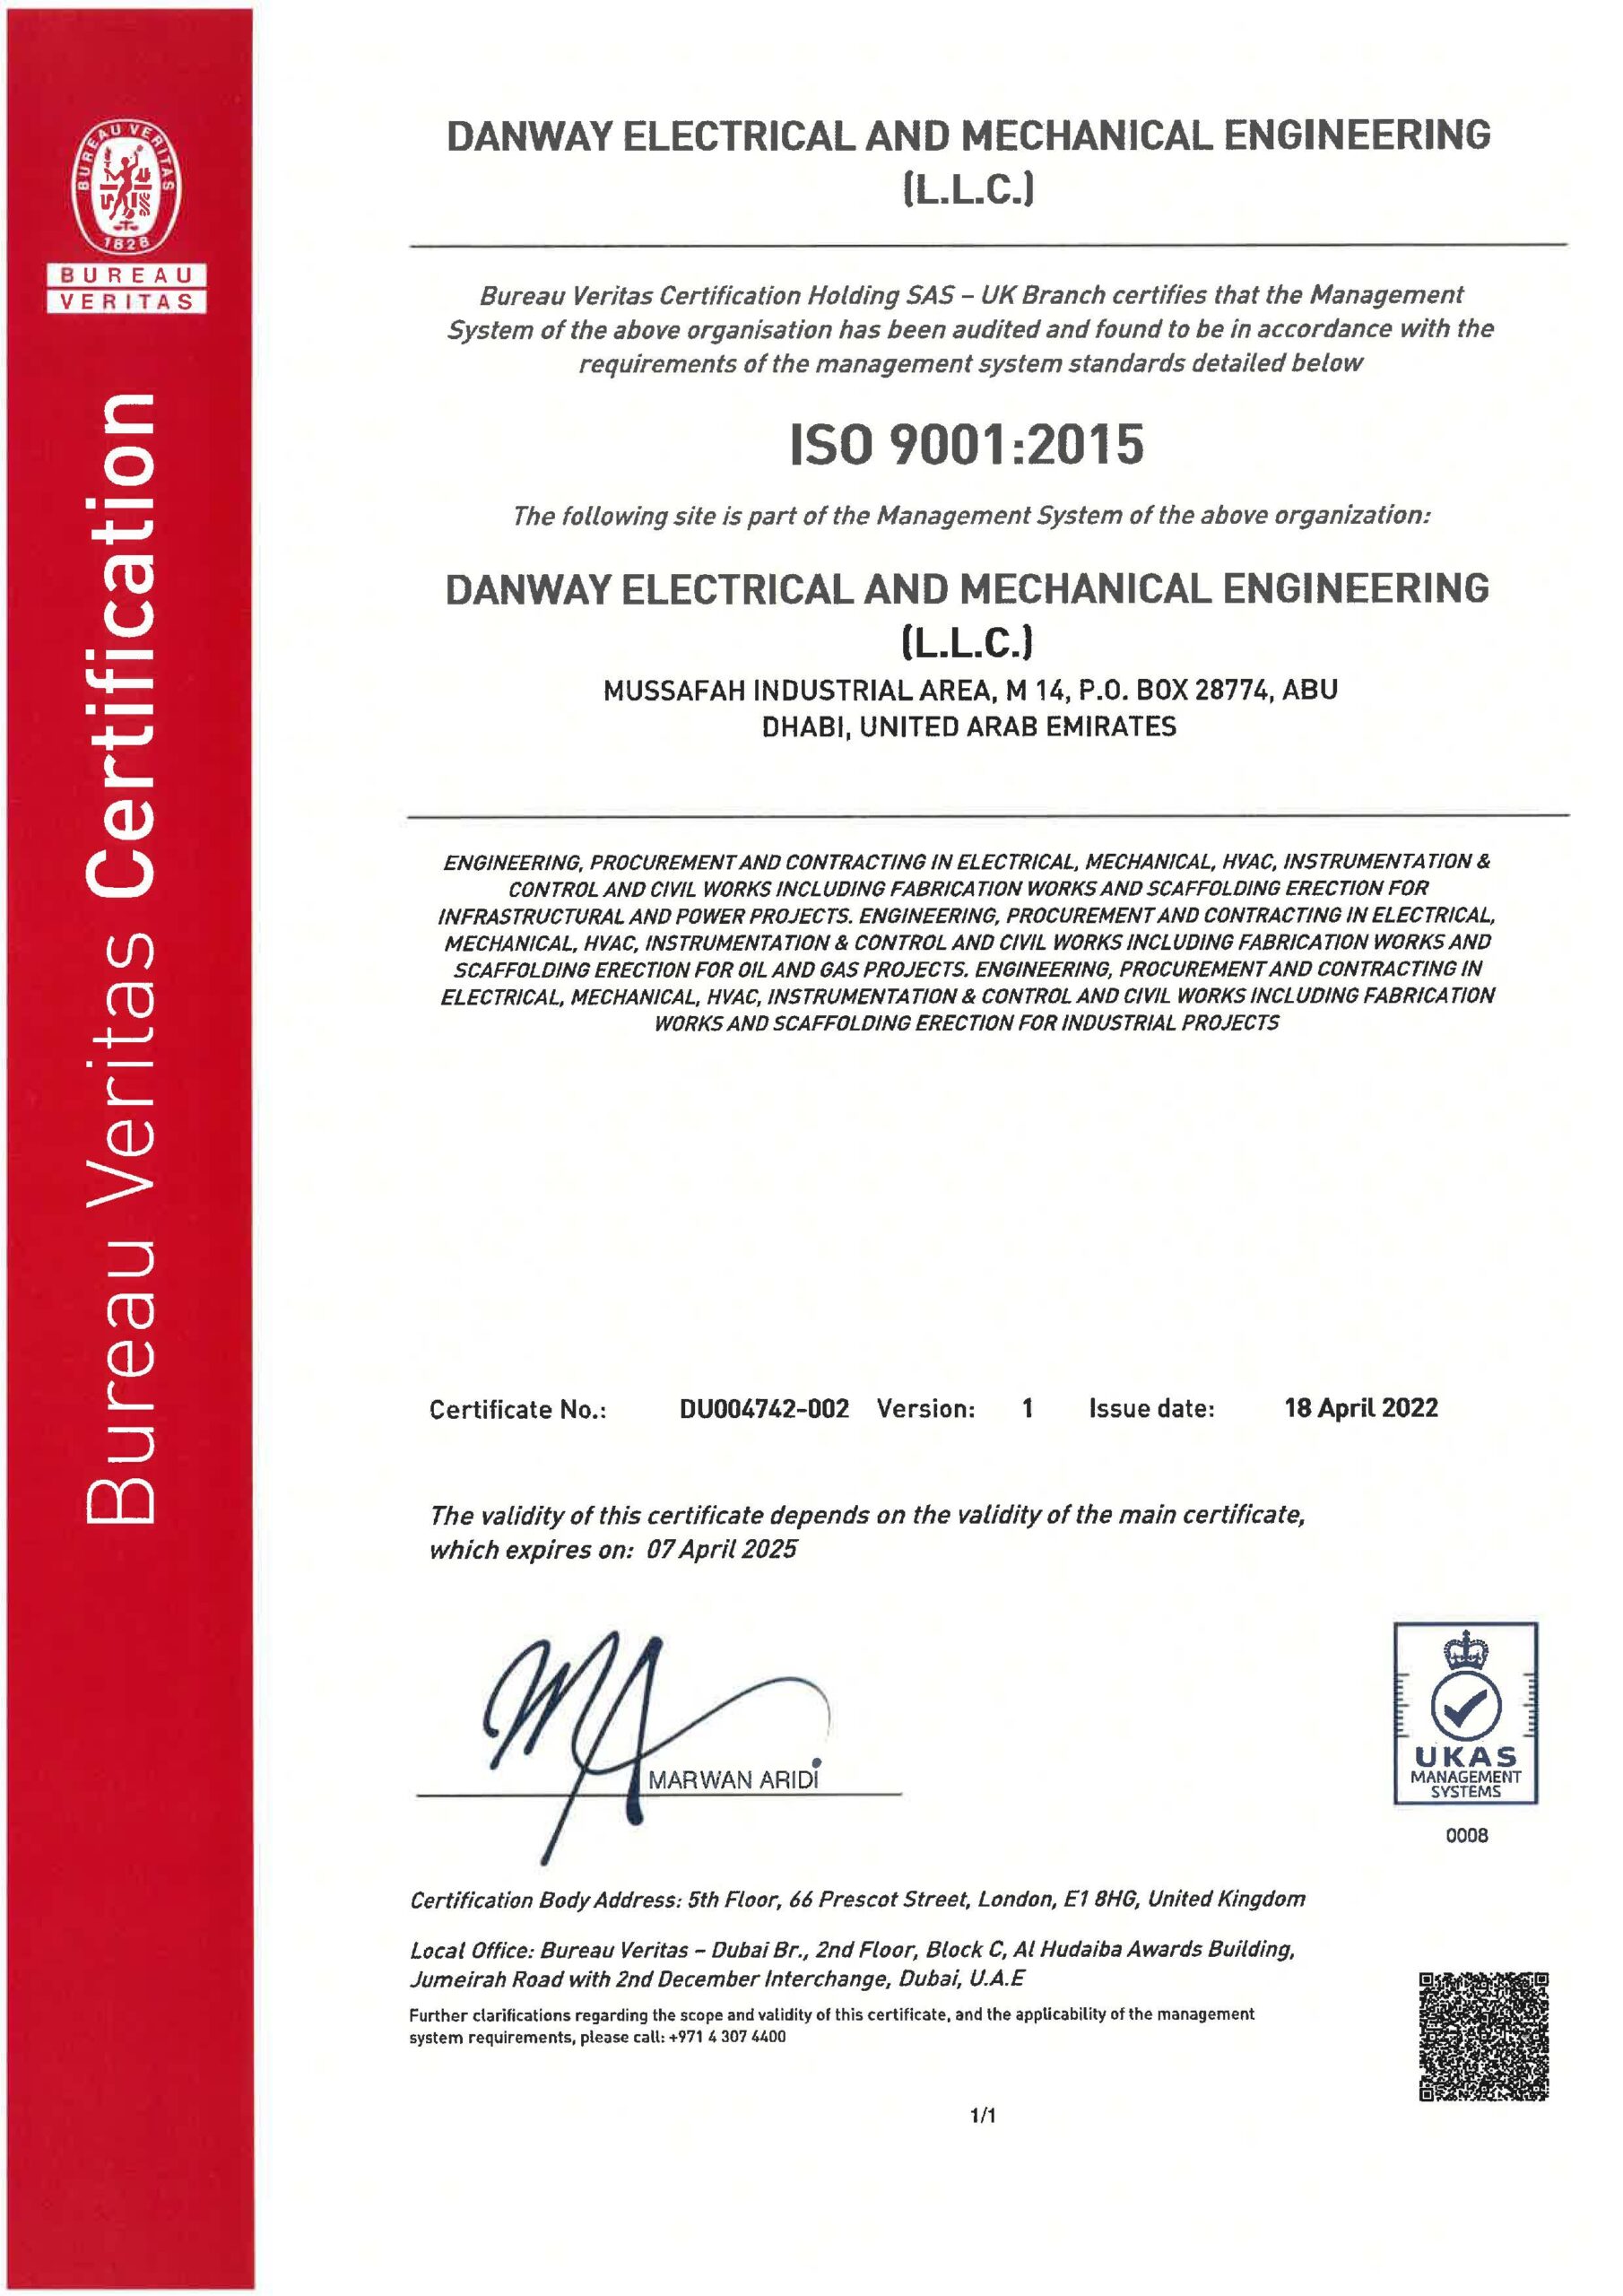 ISO9001:2015 Danway EME, Abu Dhabi